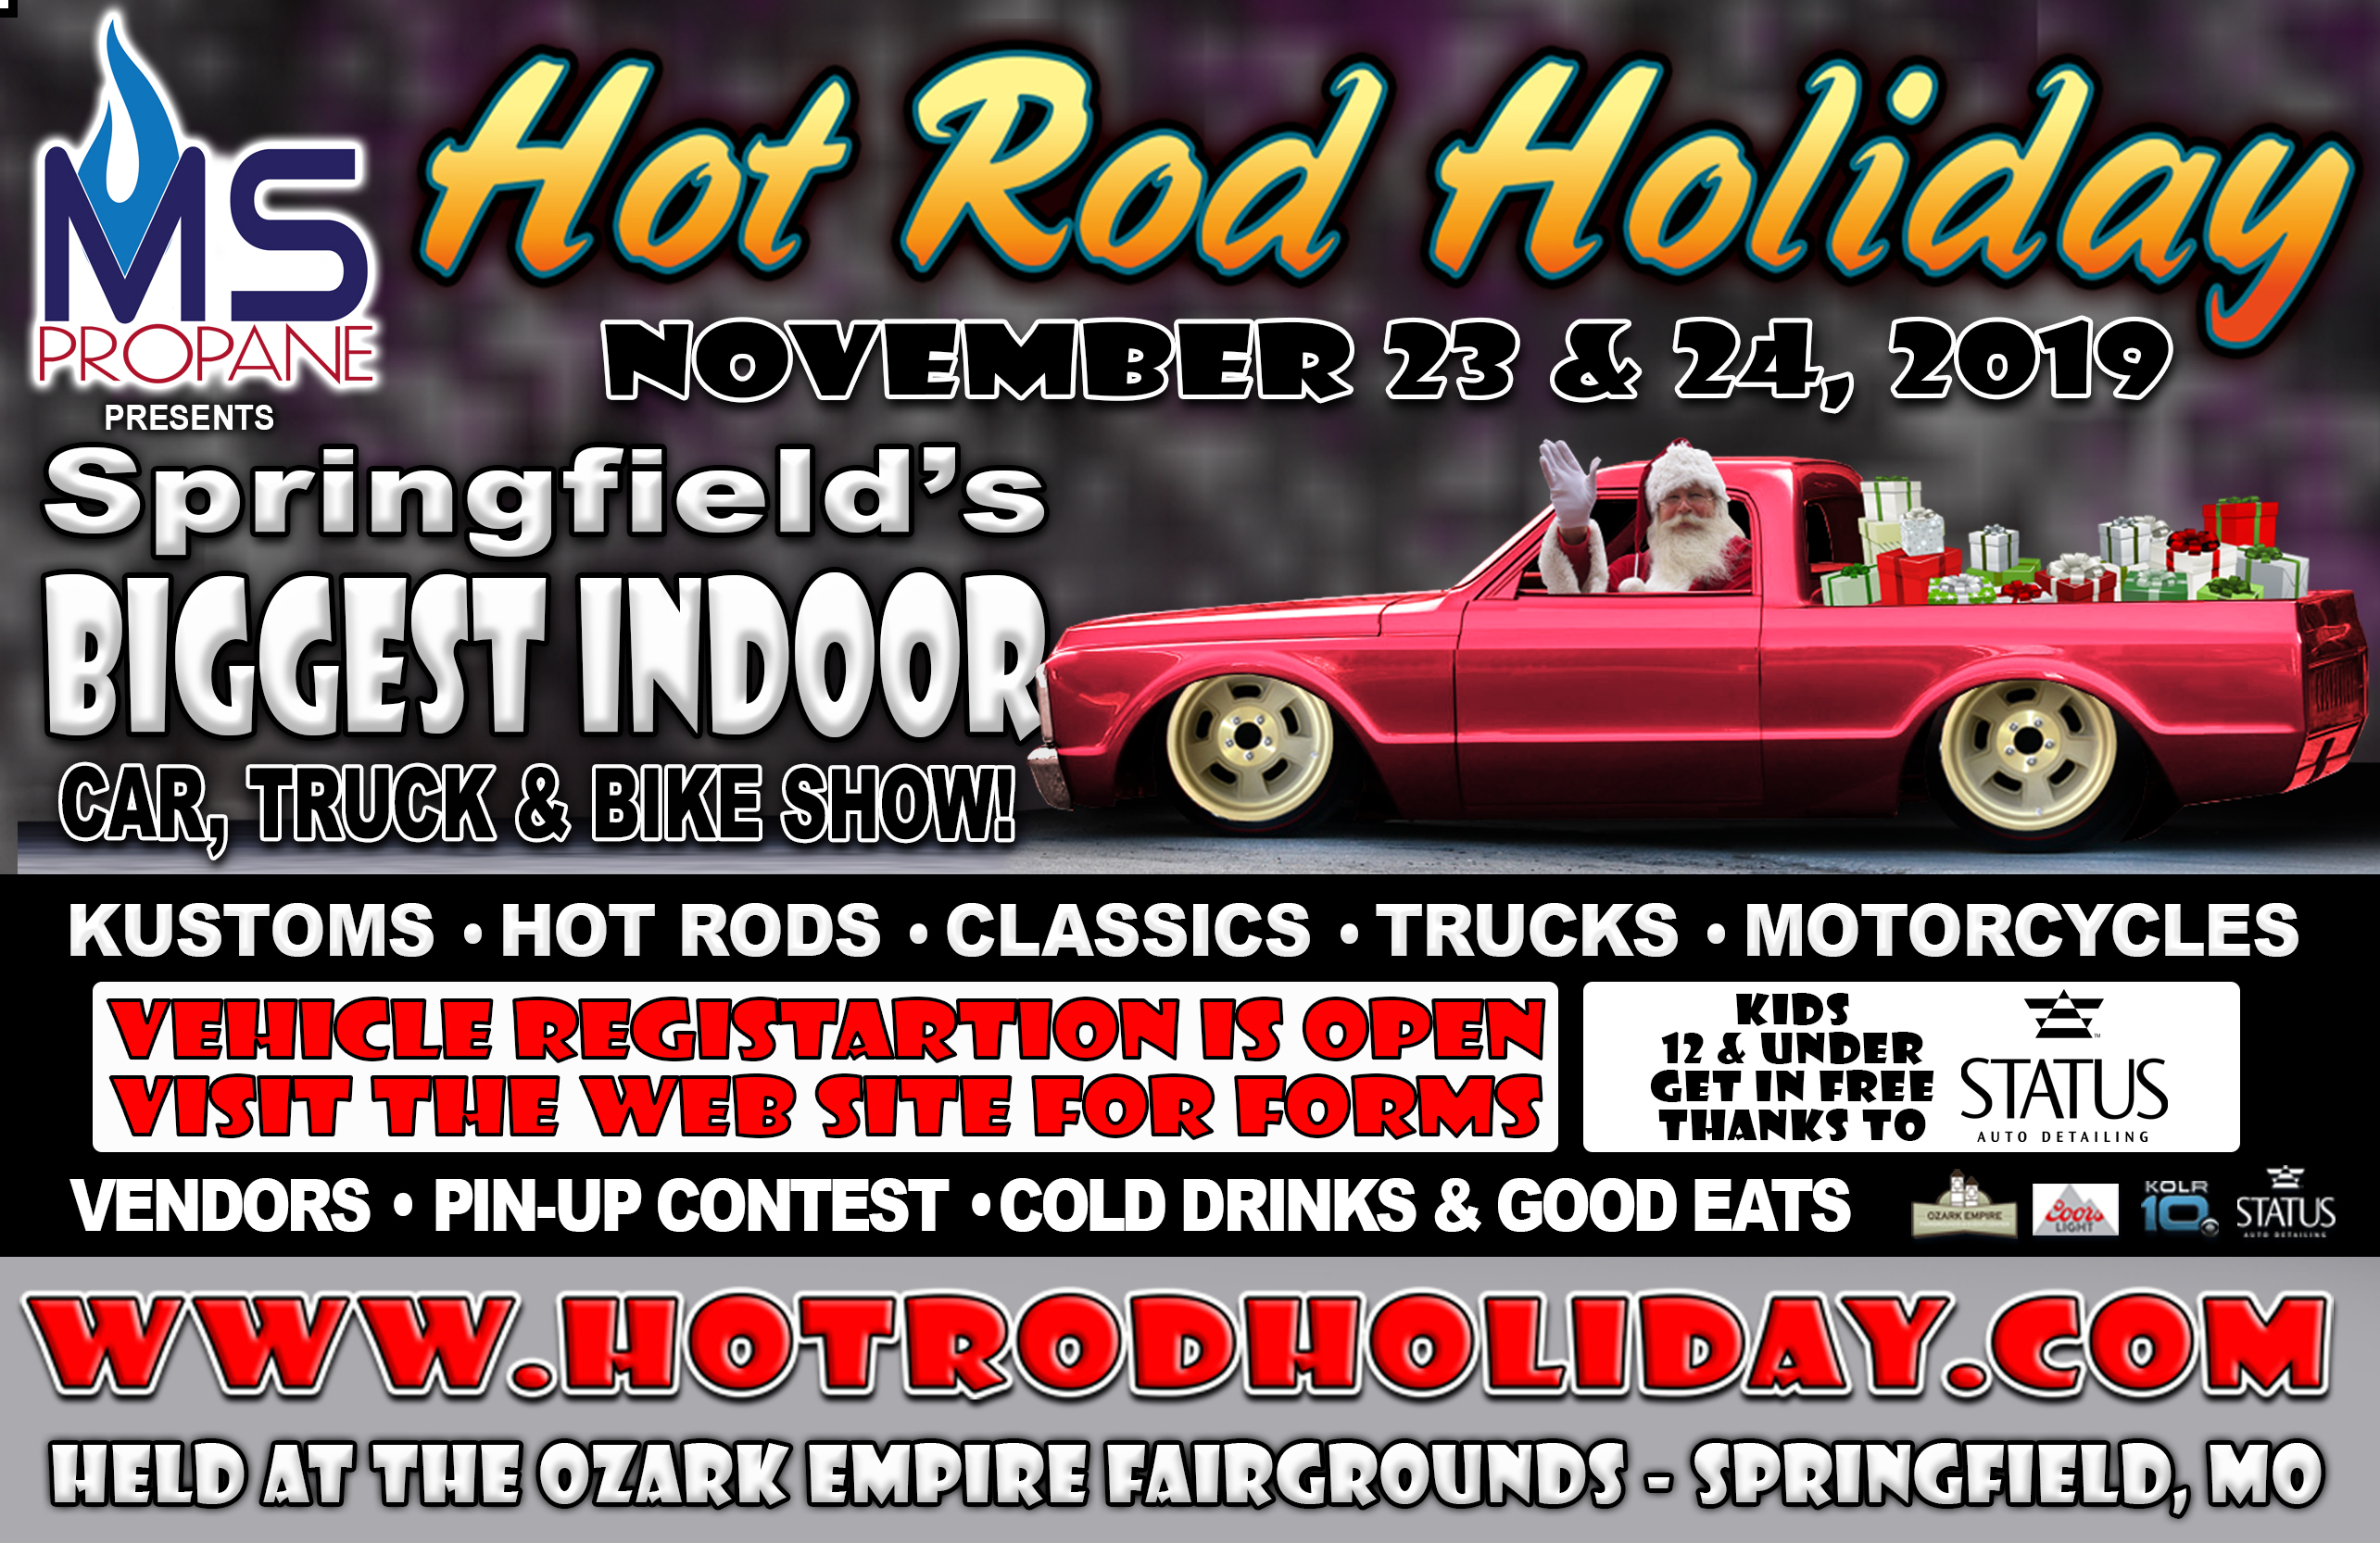 Hotrod Holiday November 23 & 24, 2019